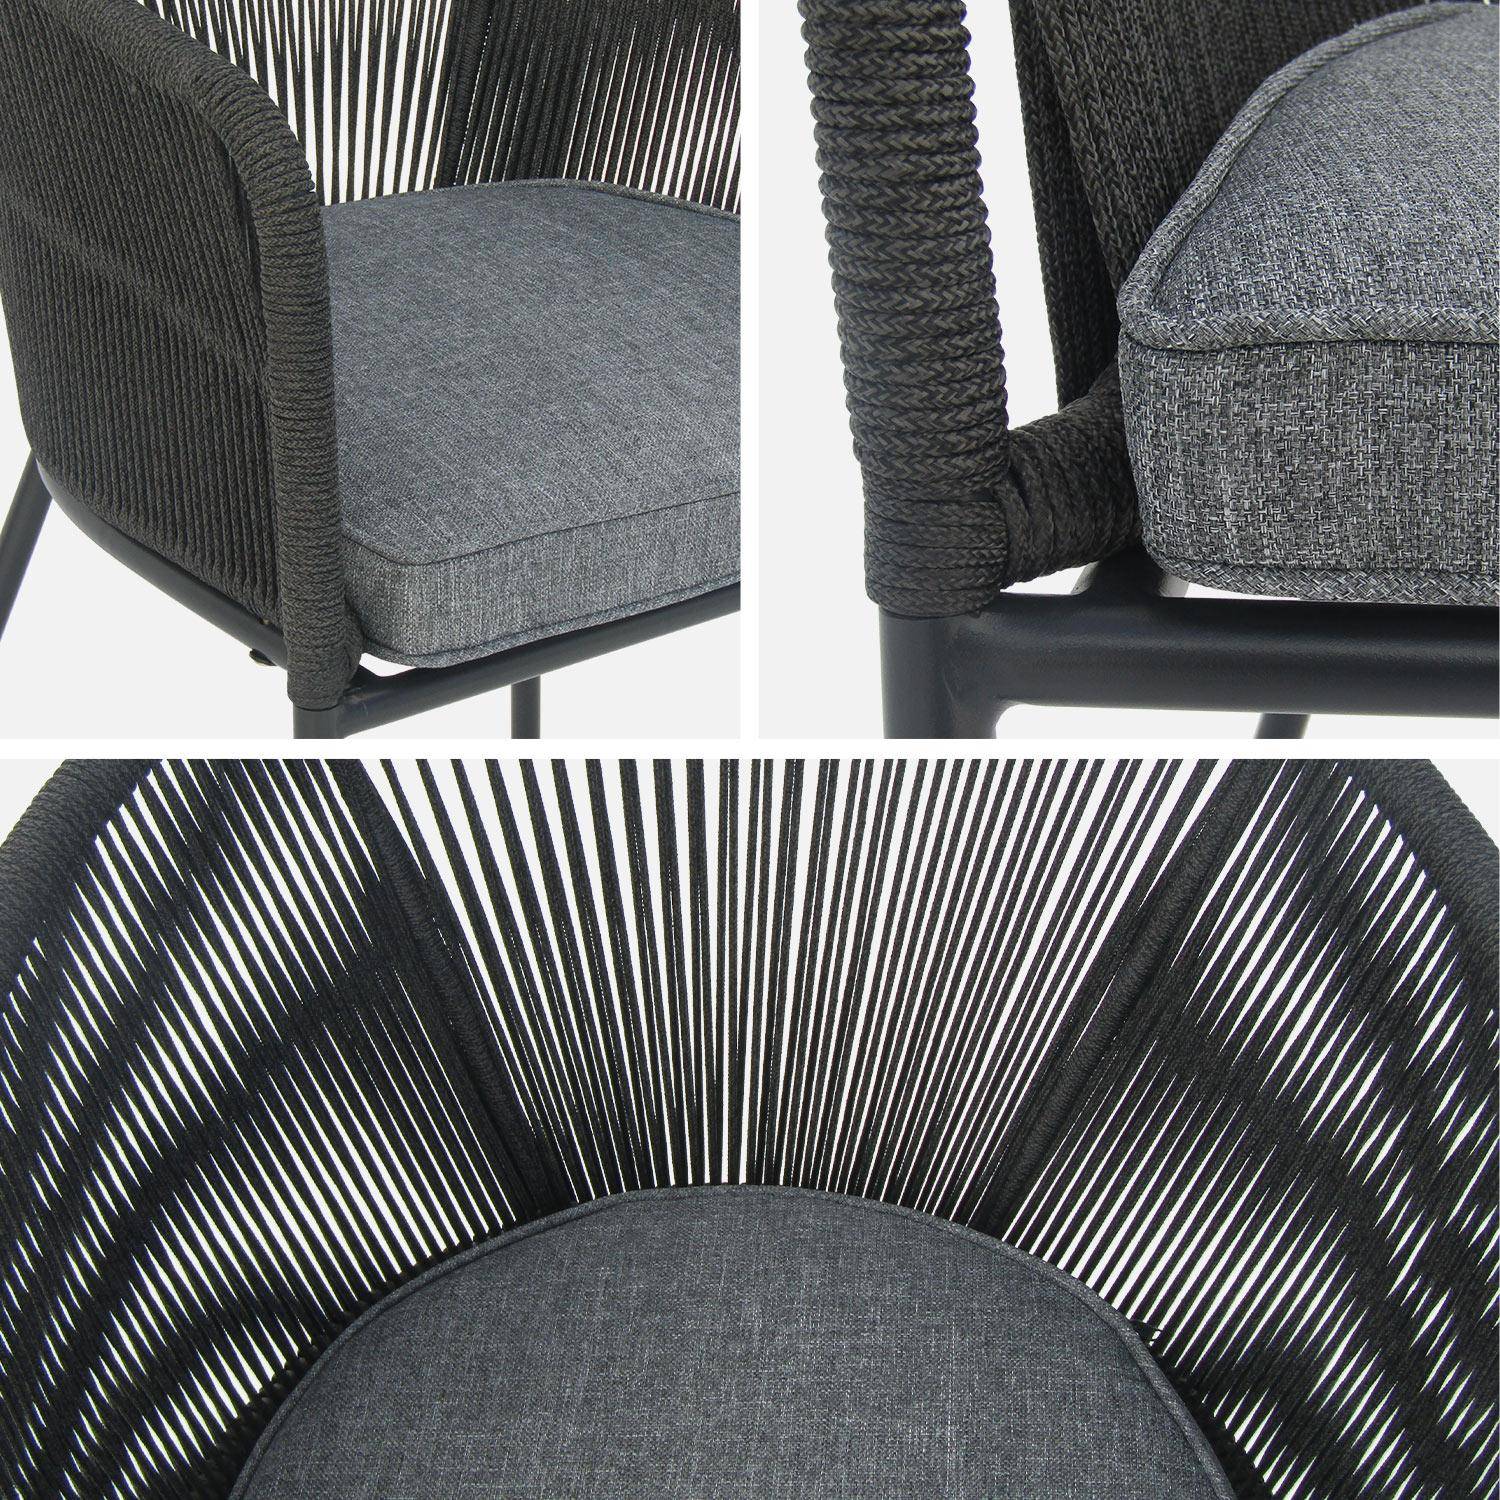 Table à manger bois d'acacia ronde, intérieur / extérieur + 4 fauteuils en corde noir et acier Photo8